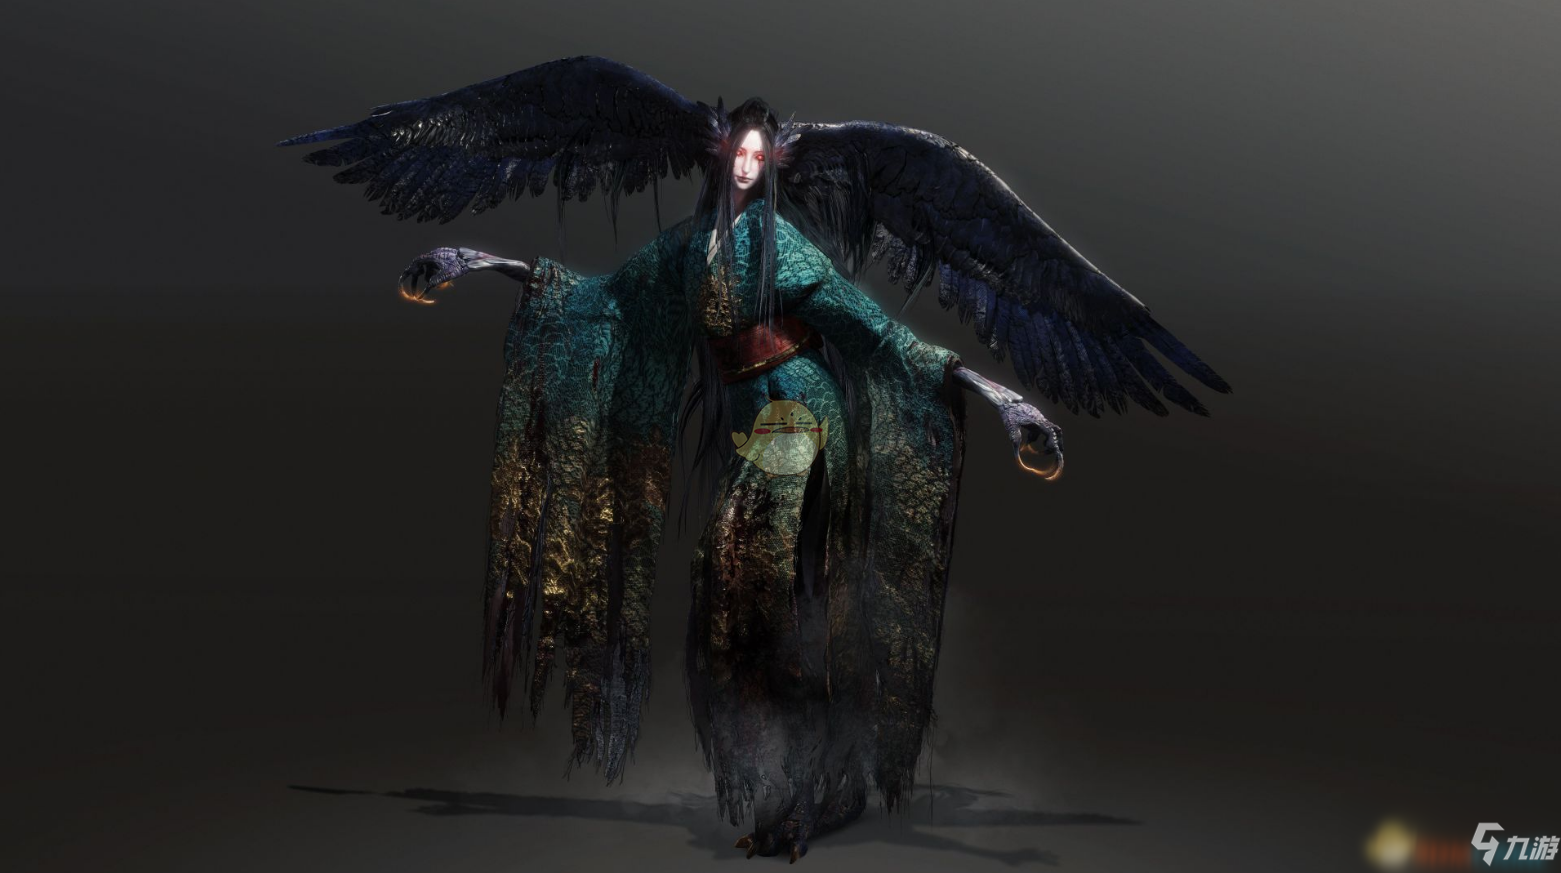 姑获鸟是一种从中国传入日本的妖怪,南北朝时期和唐明等朝代的各类